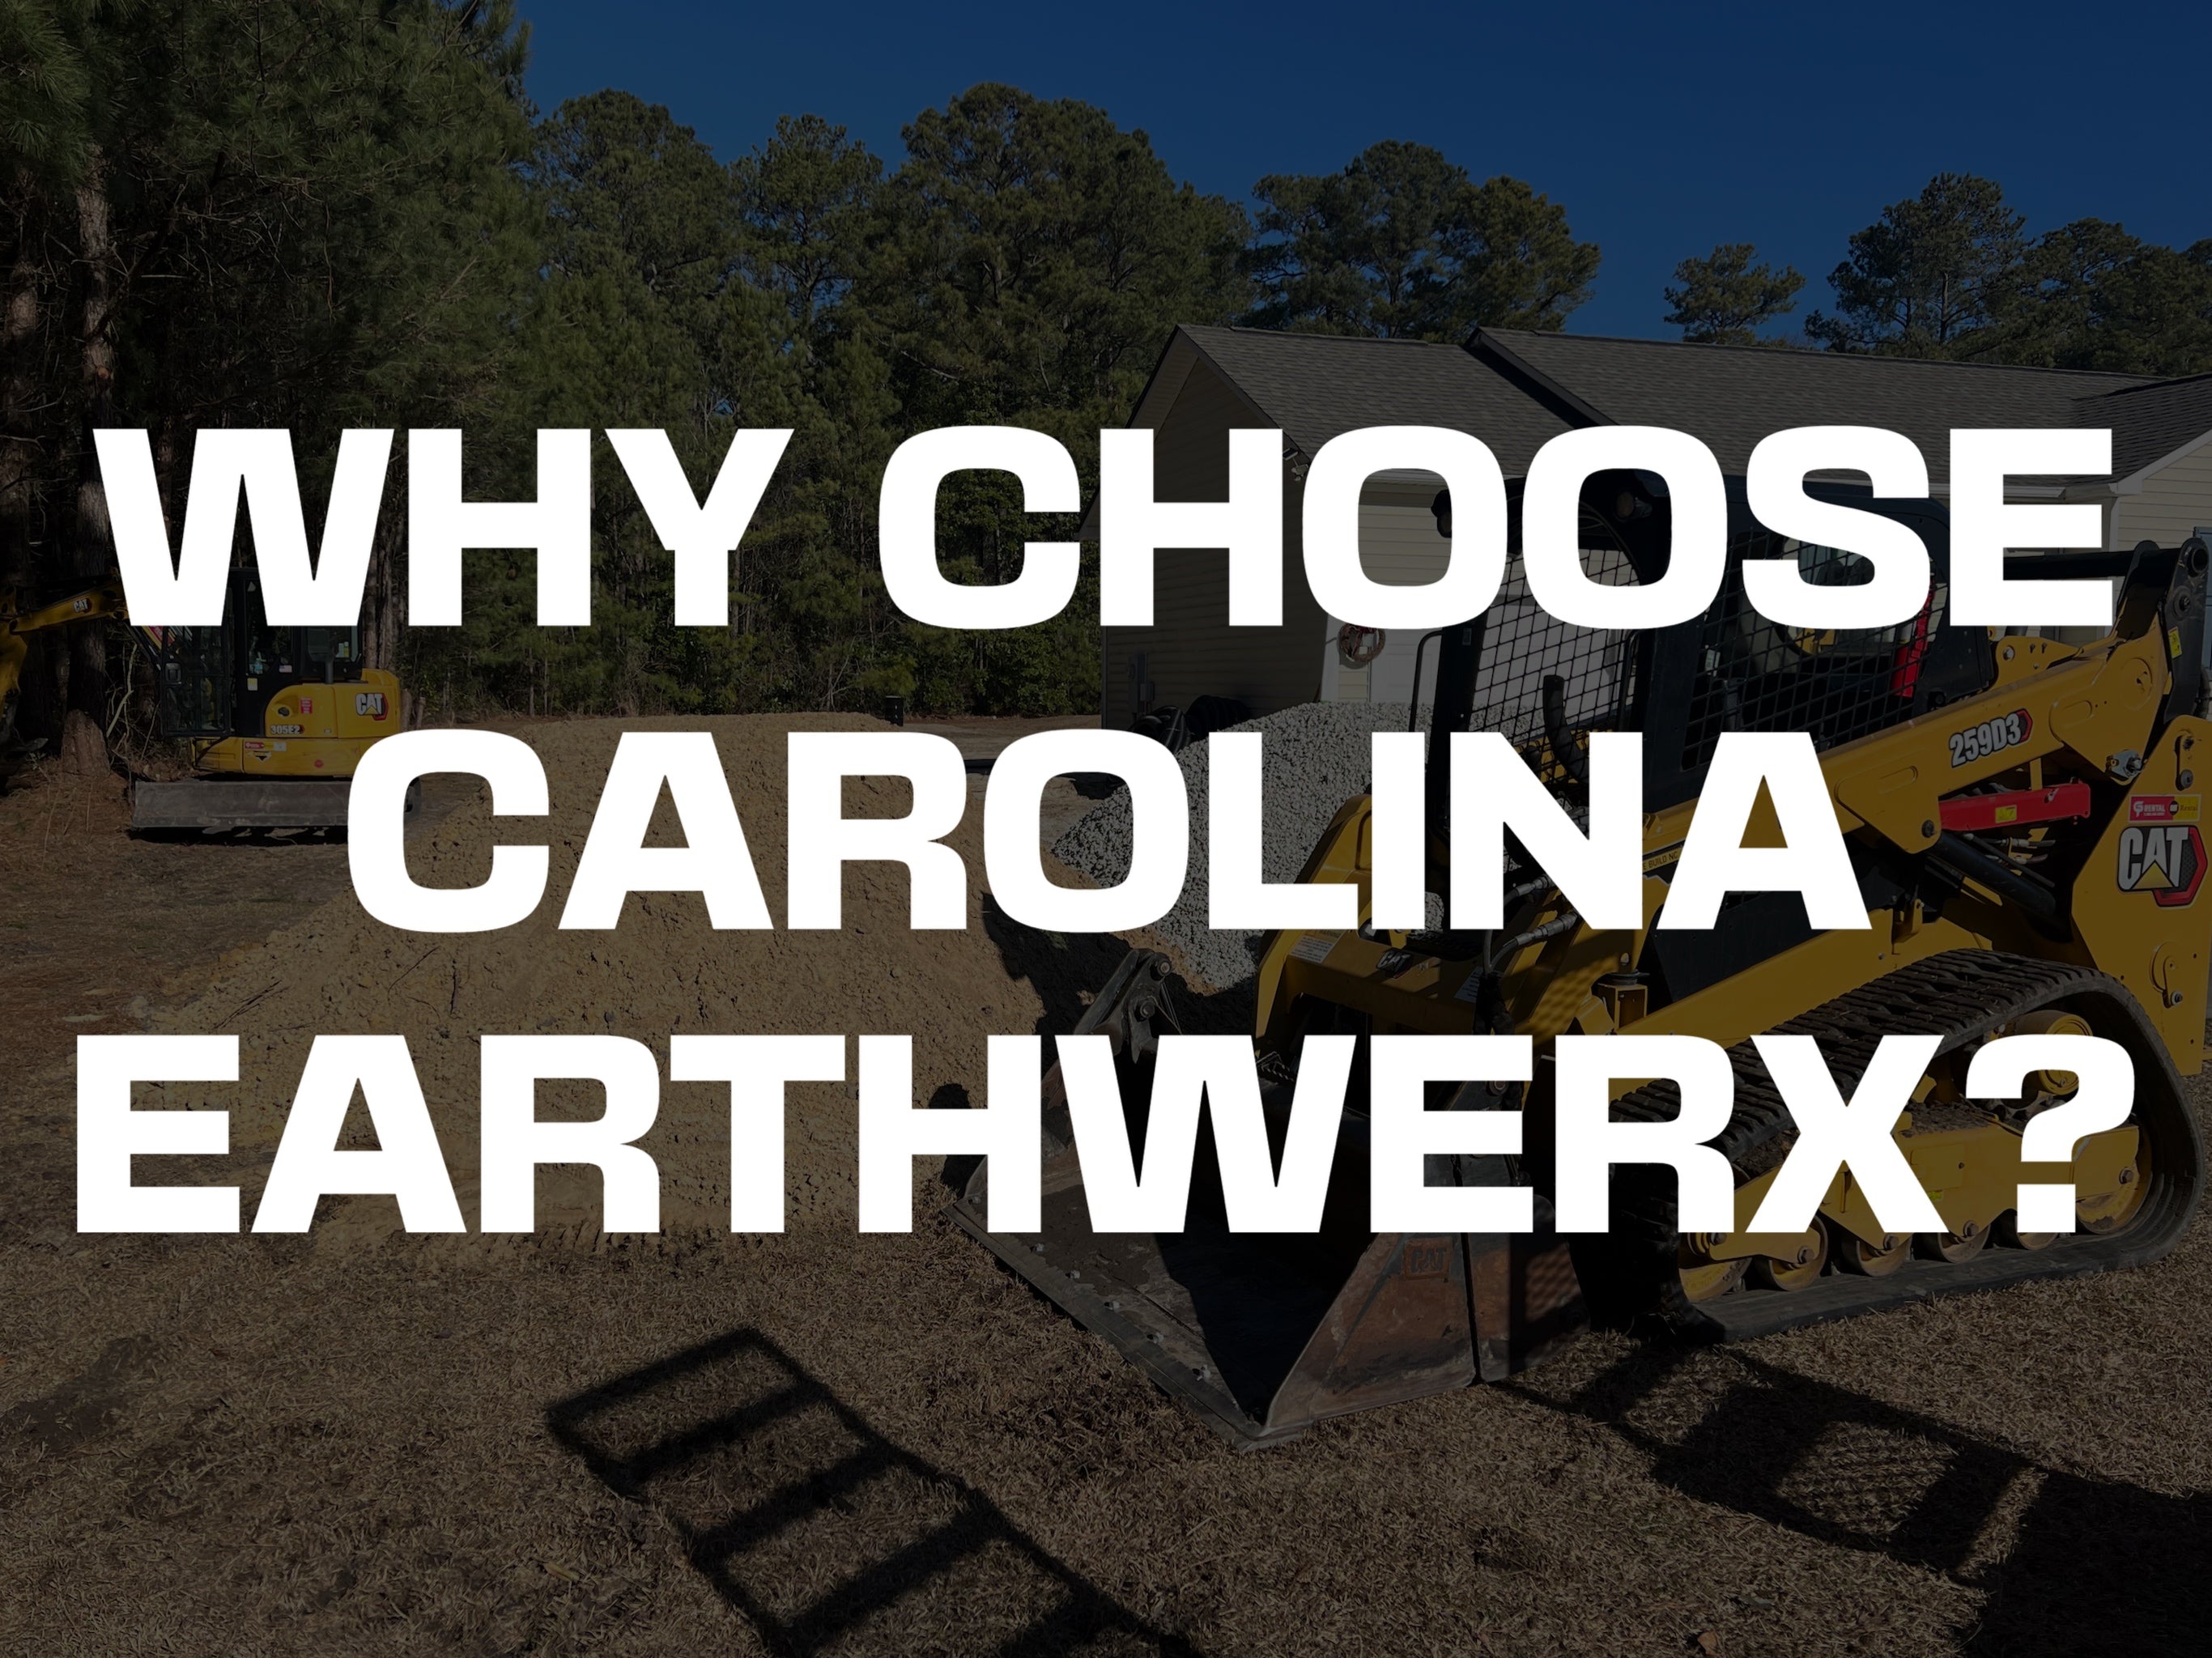 WHY CHOOSE CAROLINA EARTHWERX?